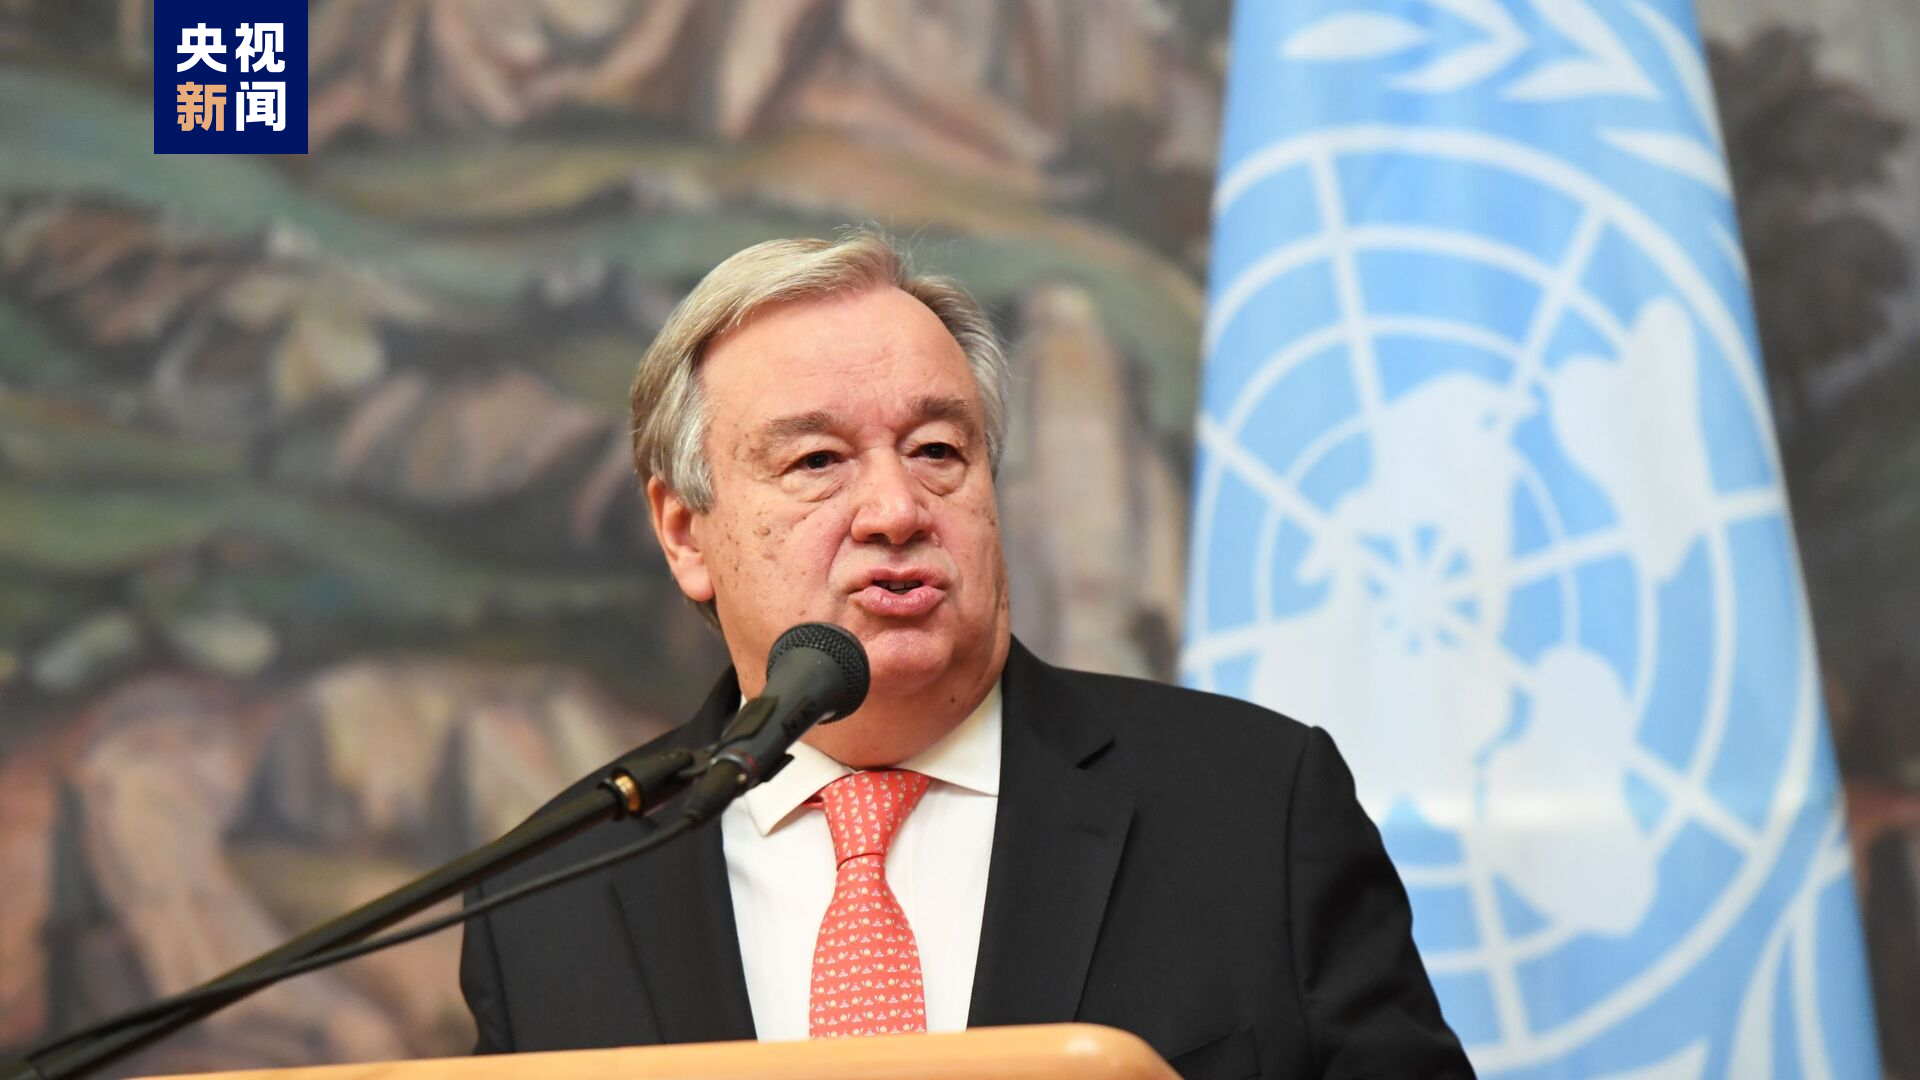 △联合国秘书长在冲突发生后呼吁苏丹各方立即停止战事